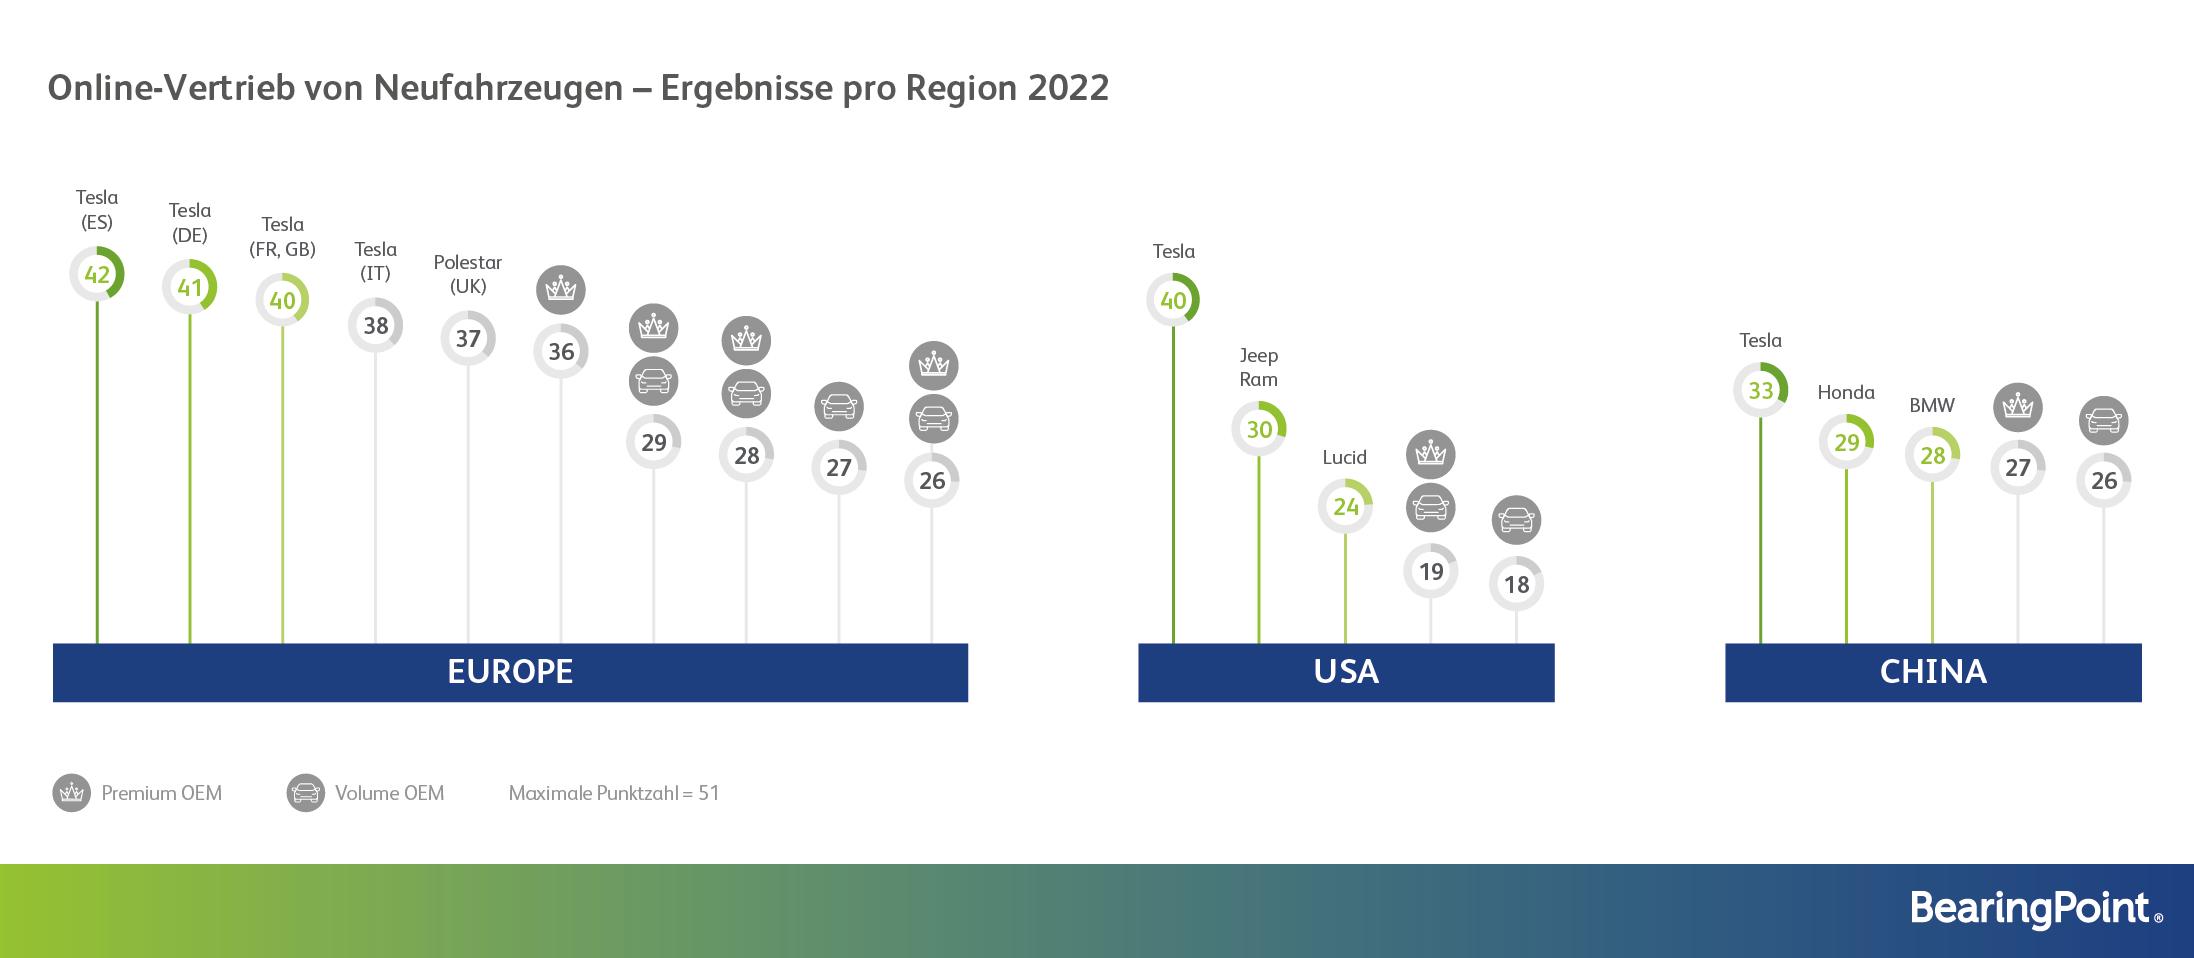 Infografik "Online-Vertrieb von Neufahrzeugen - Ergebnisse pro Region 2022"